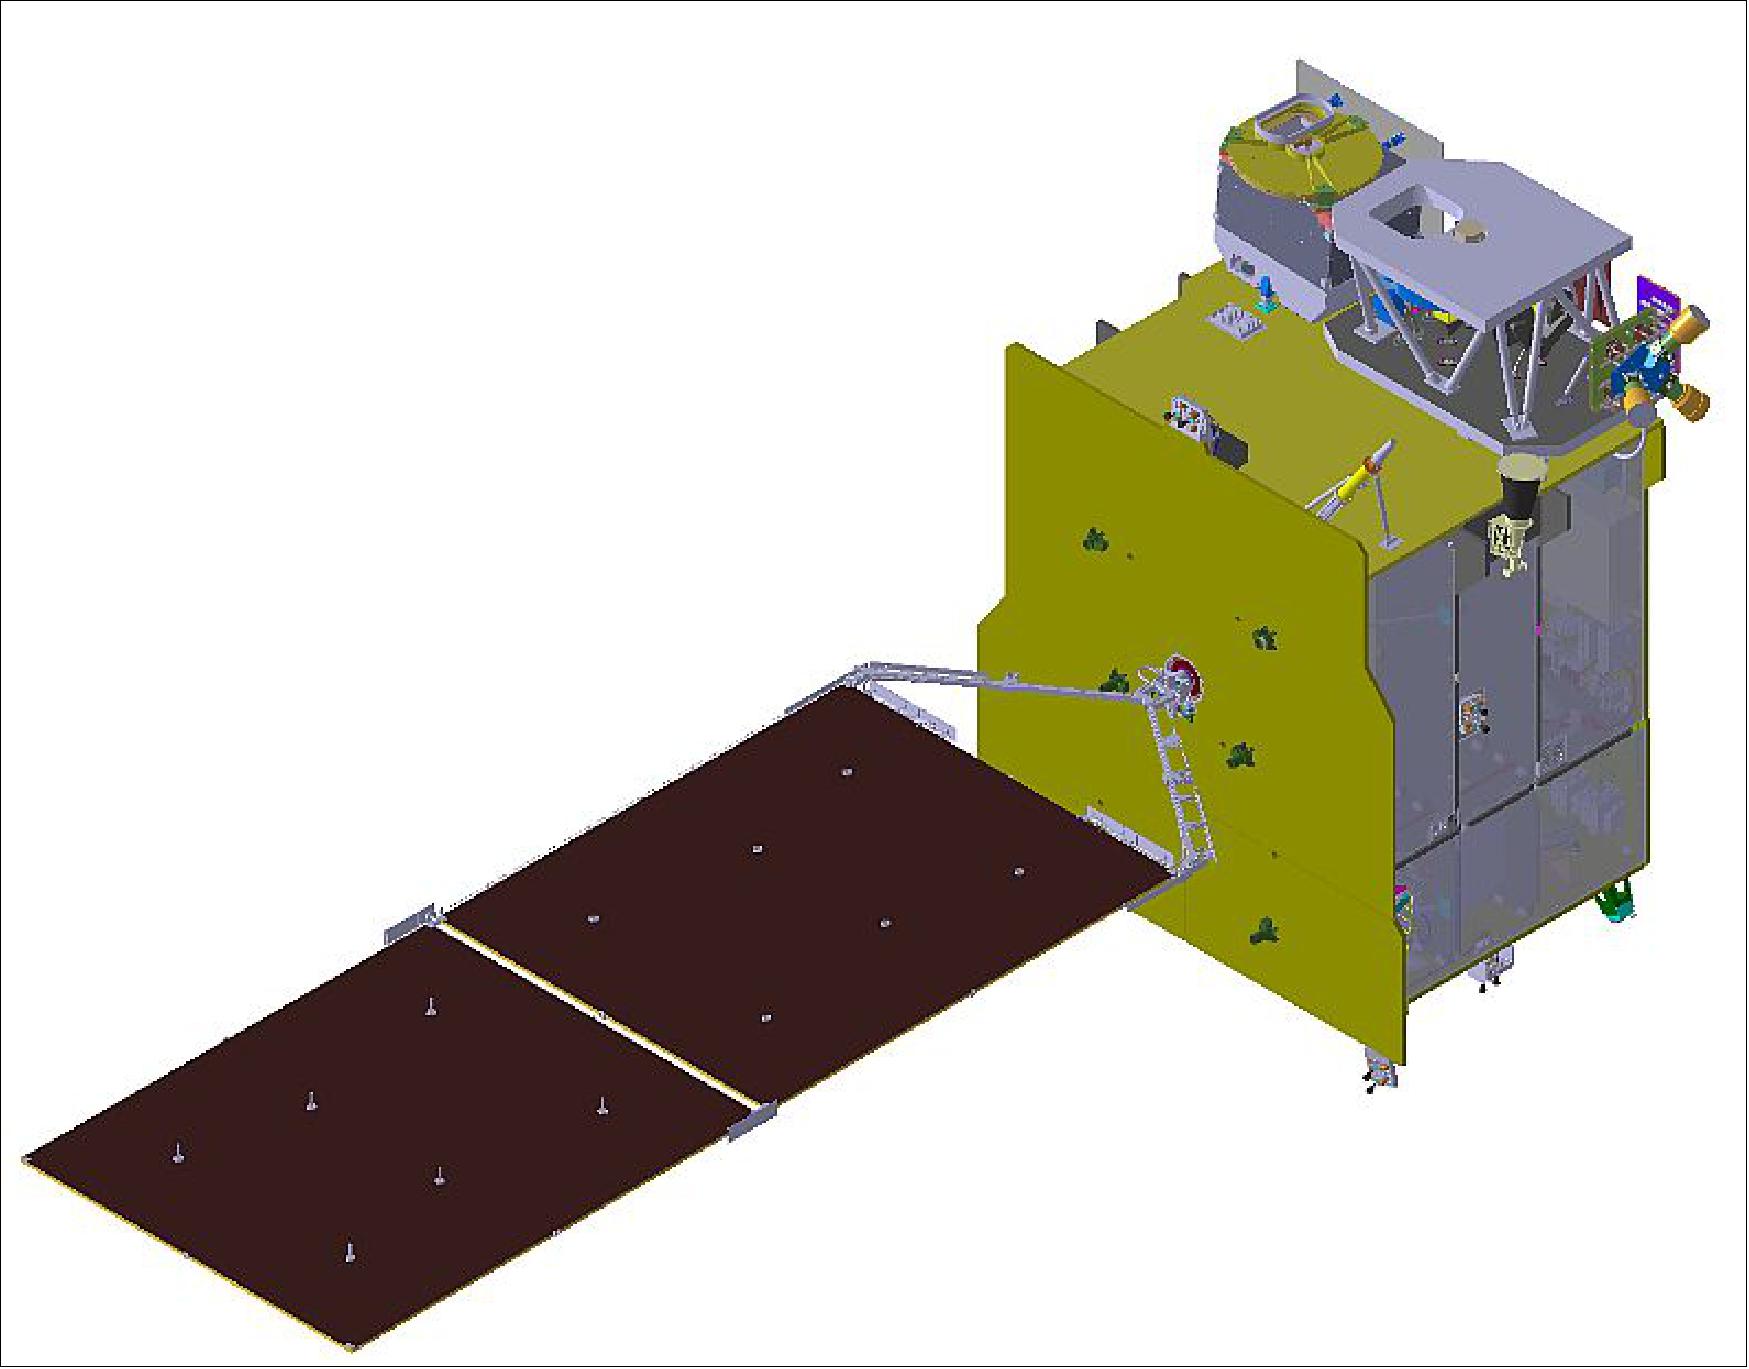 Figure 7: Illustration of the GEO-KOMPSAT-2B spacecraft (image credit: KARI)